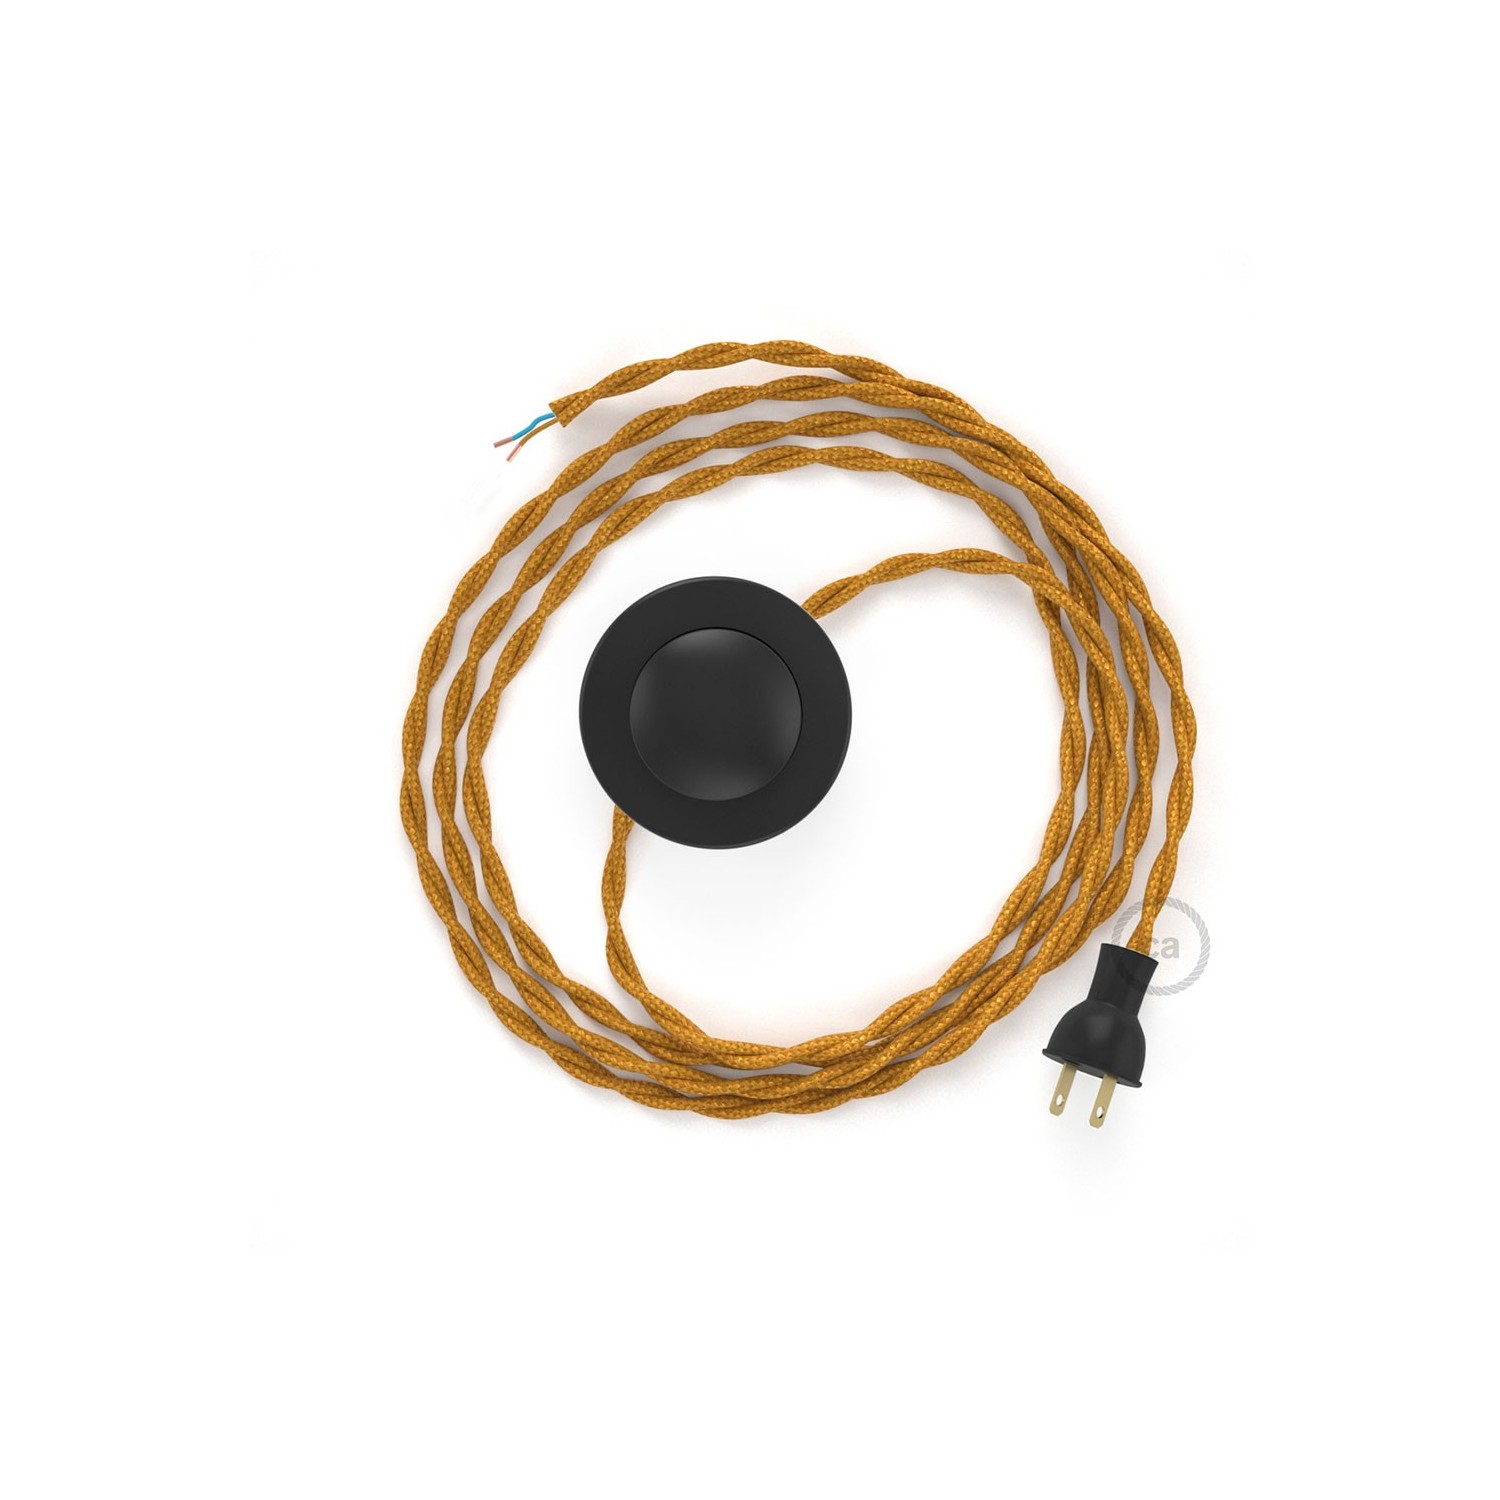 Cableado para lámpara de piso, cable TM05 Rayón Dorado 3 m. Elige tu el color de la clavija y del interruptor!